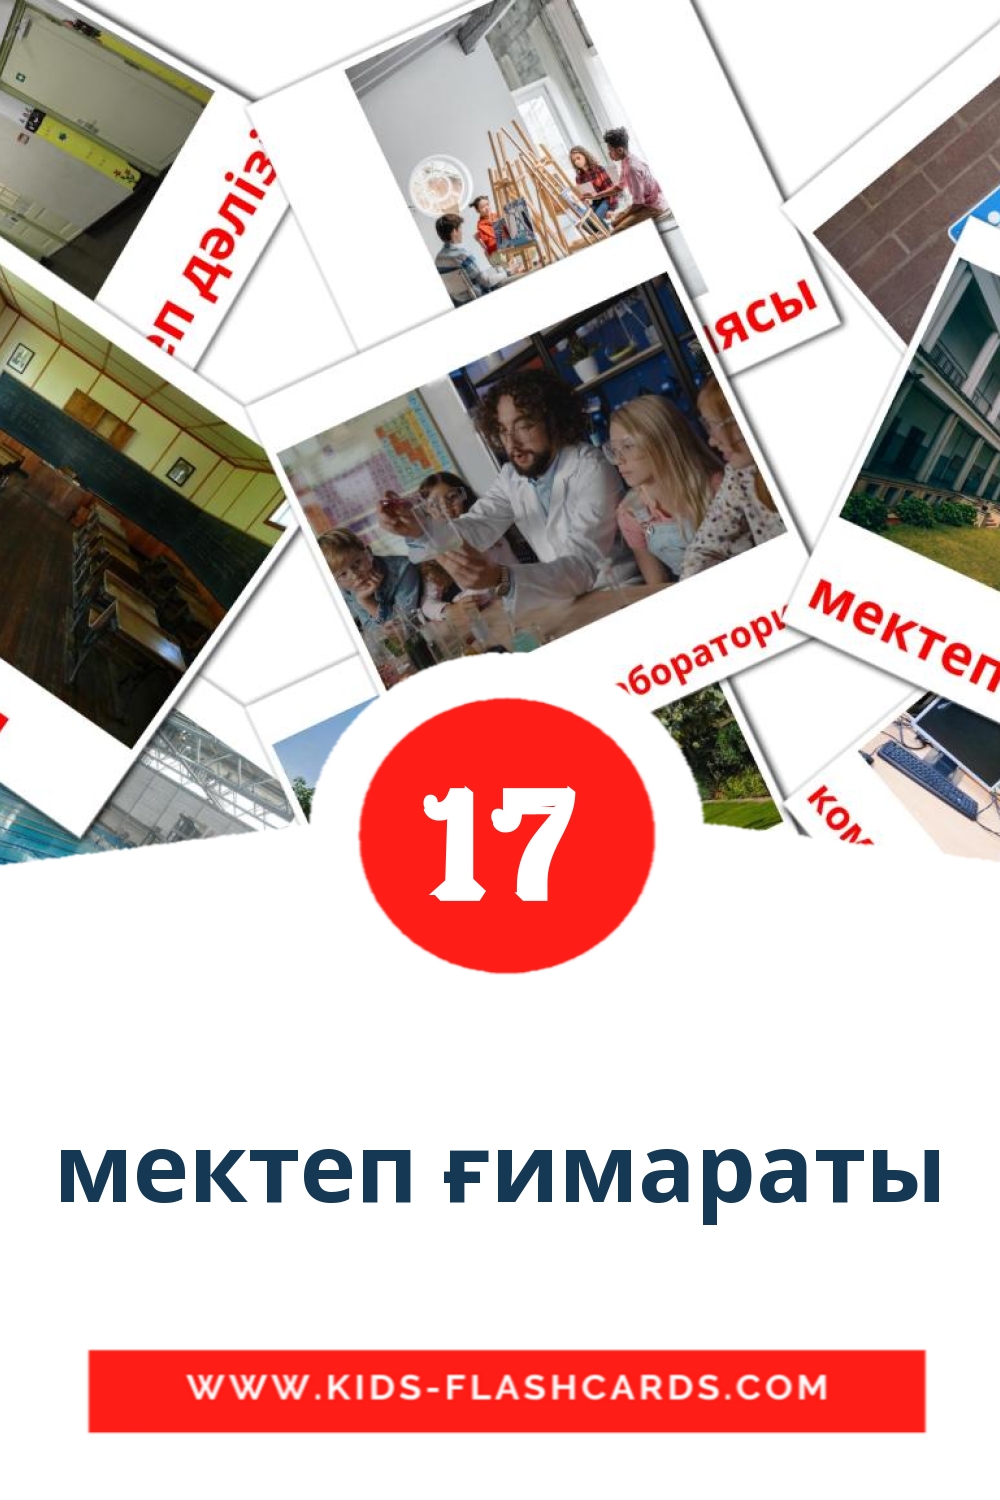 мектеп ғимараты на казахском для Детского Сада (17 карточек)